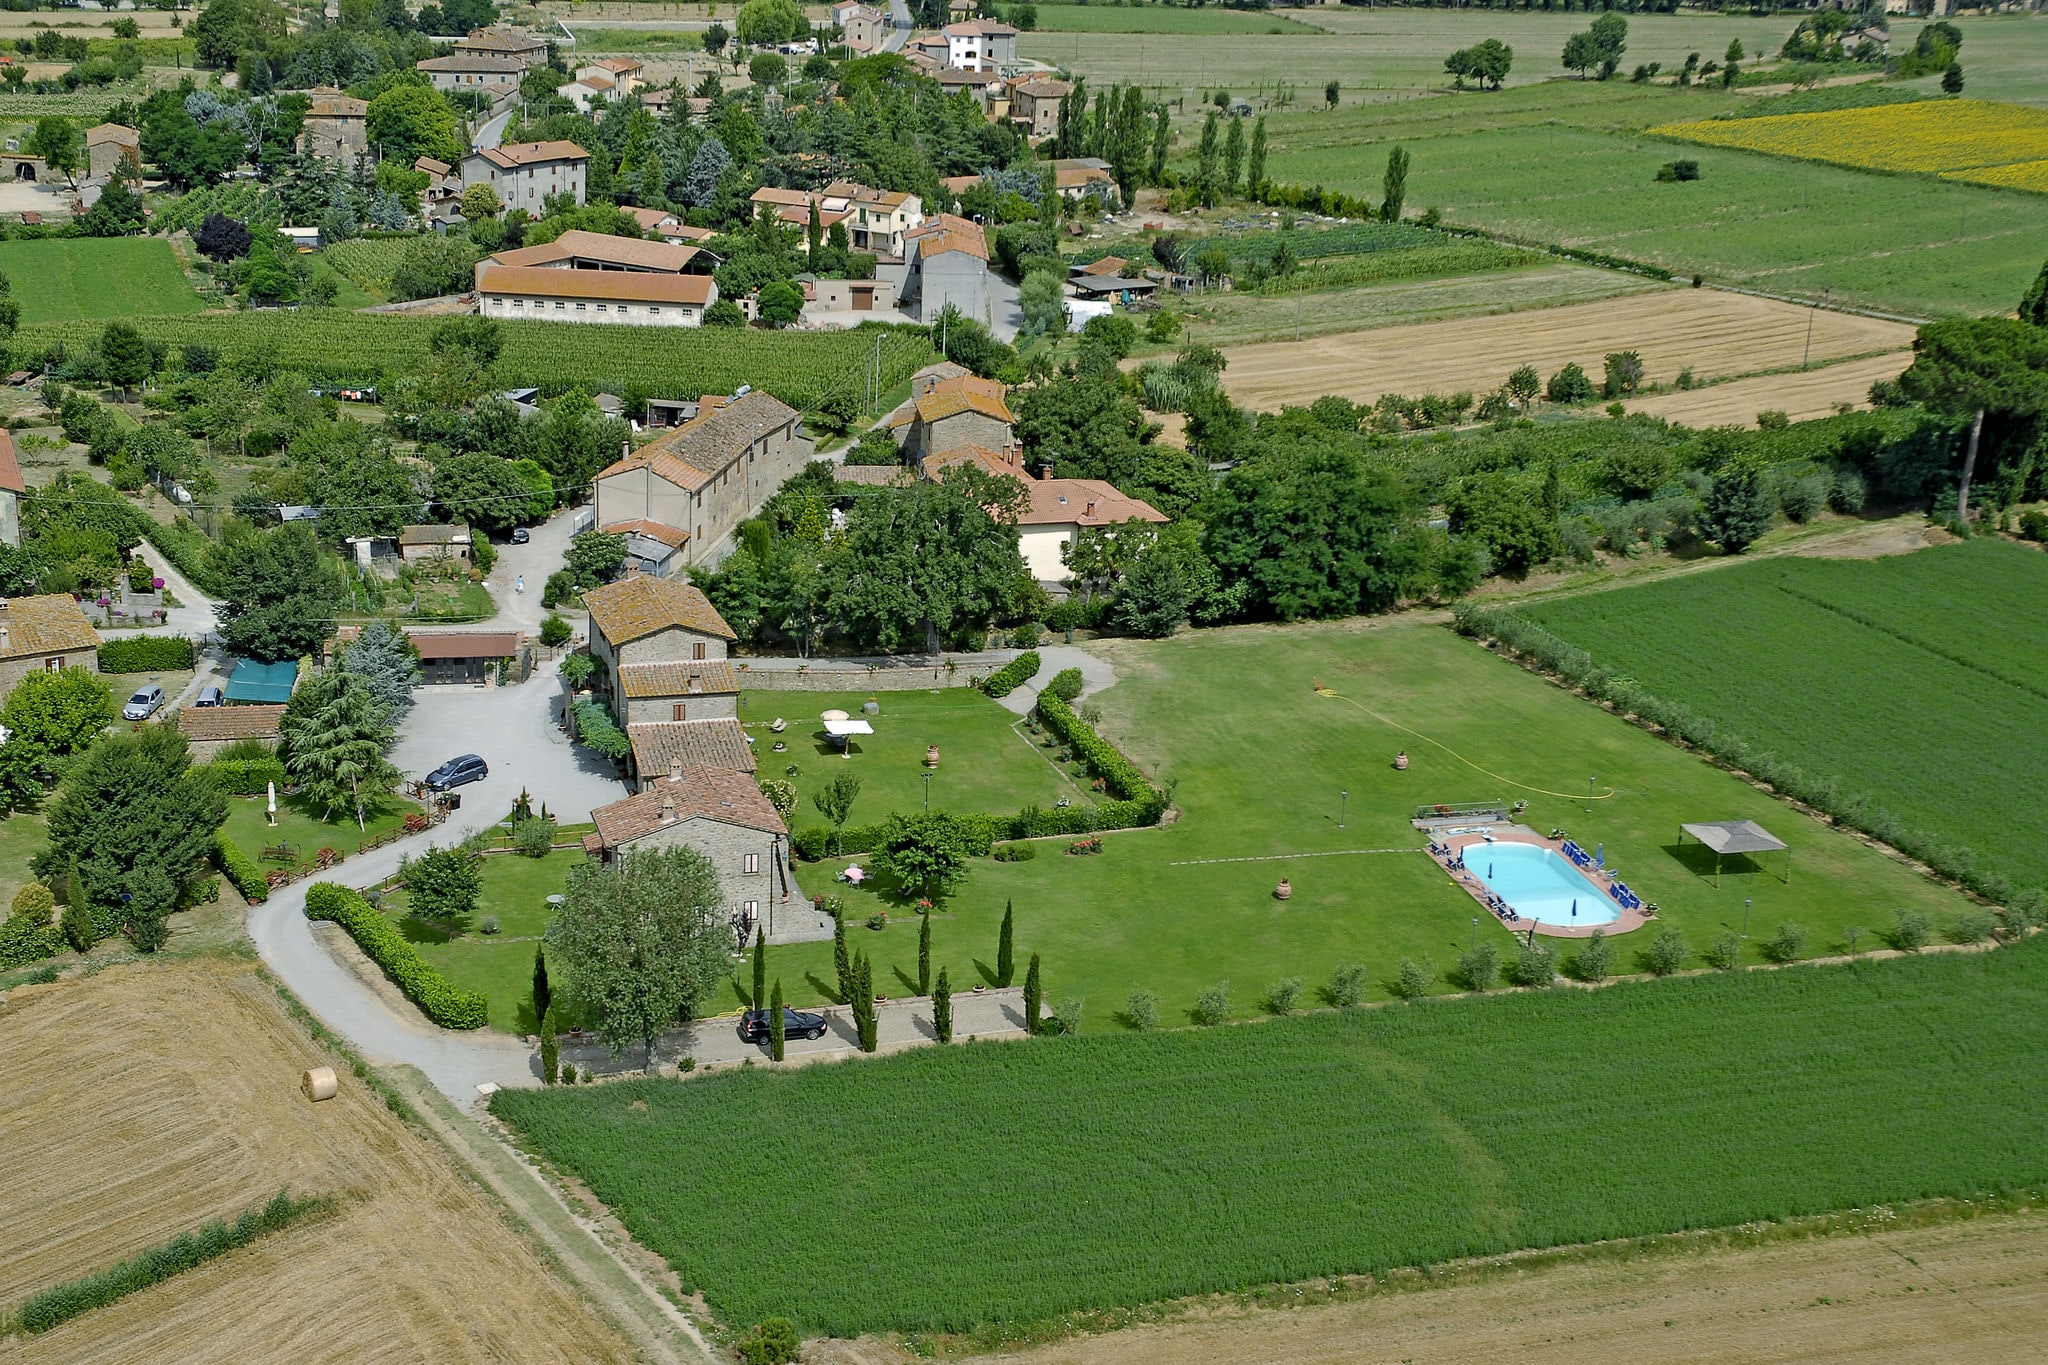 Agriturismo dichtbij Cortona met ruime tuin en zwembad